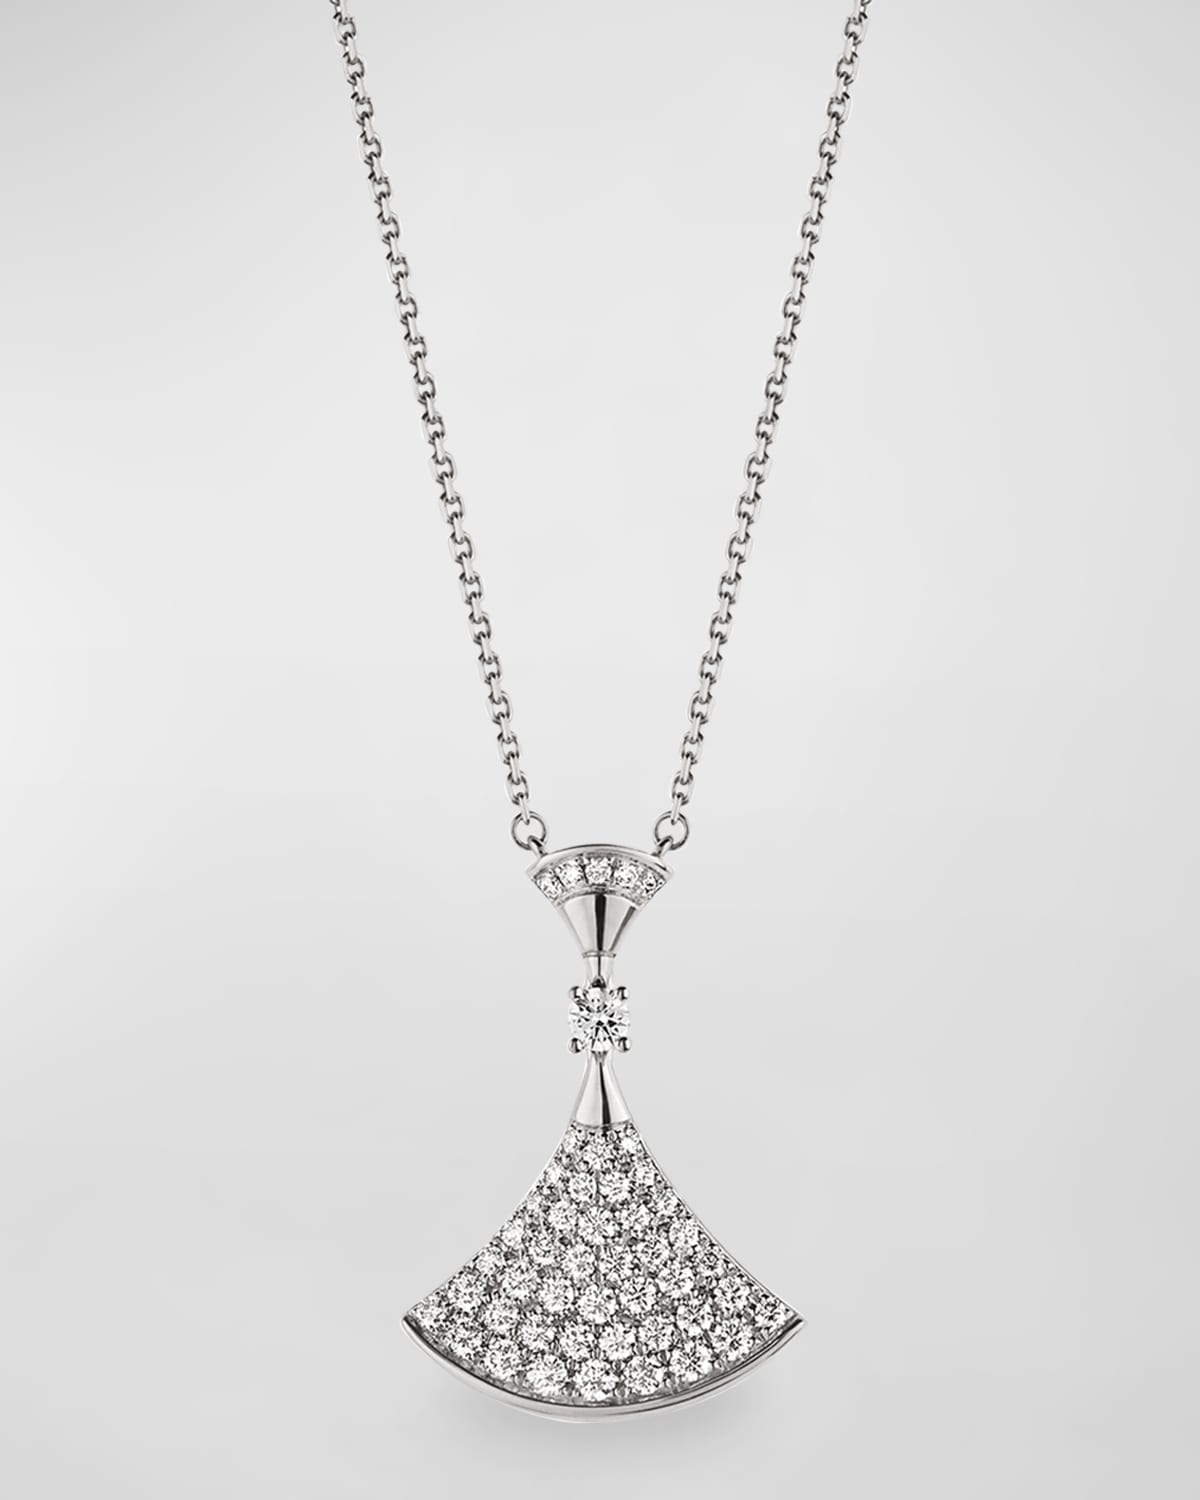 Divas' Dream Diamond Pendant Necklace in 18k White Gold